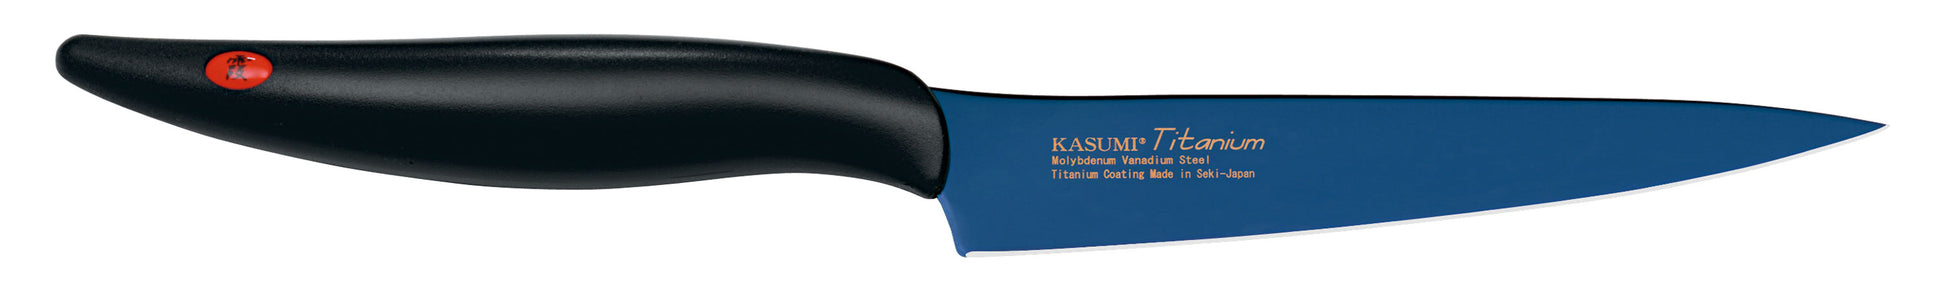 Kasumi Coltello per verdure Titanio Cm.12 K22012B